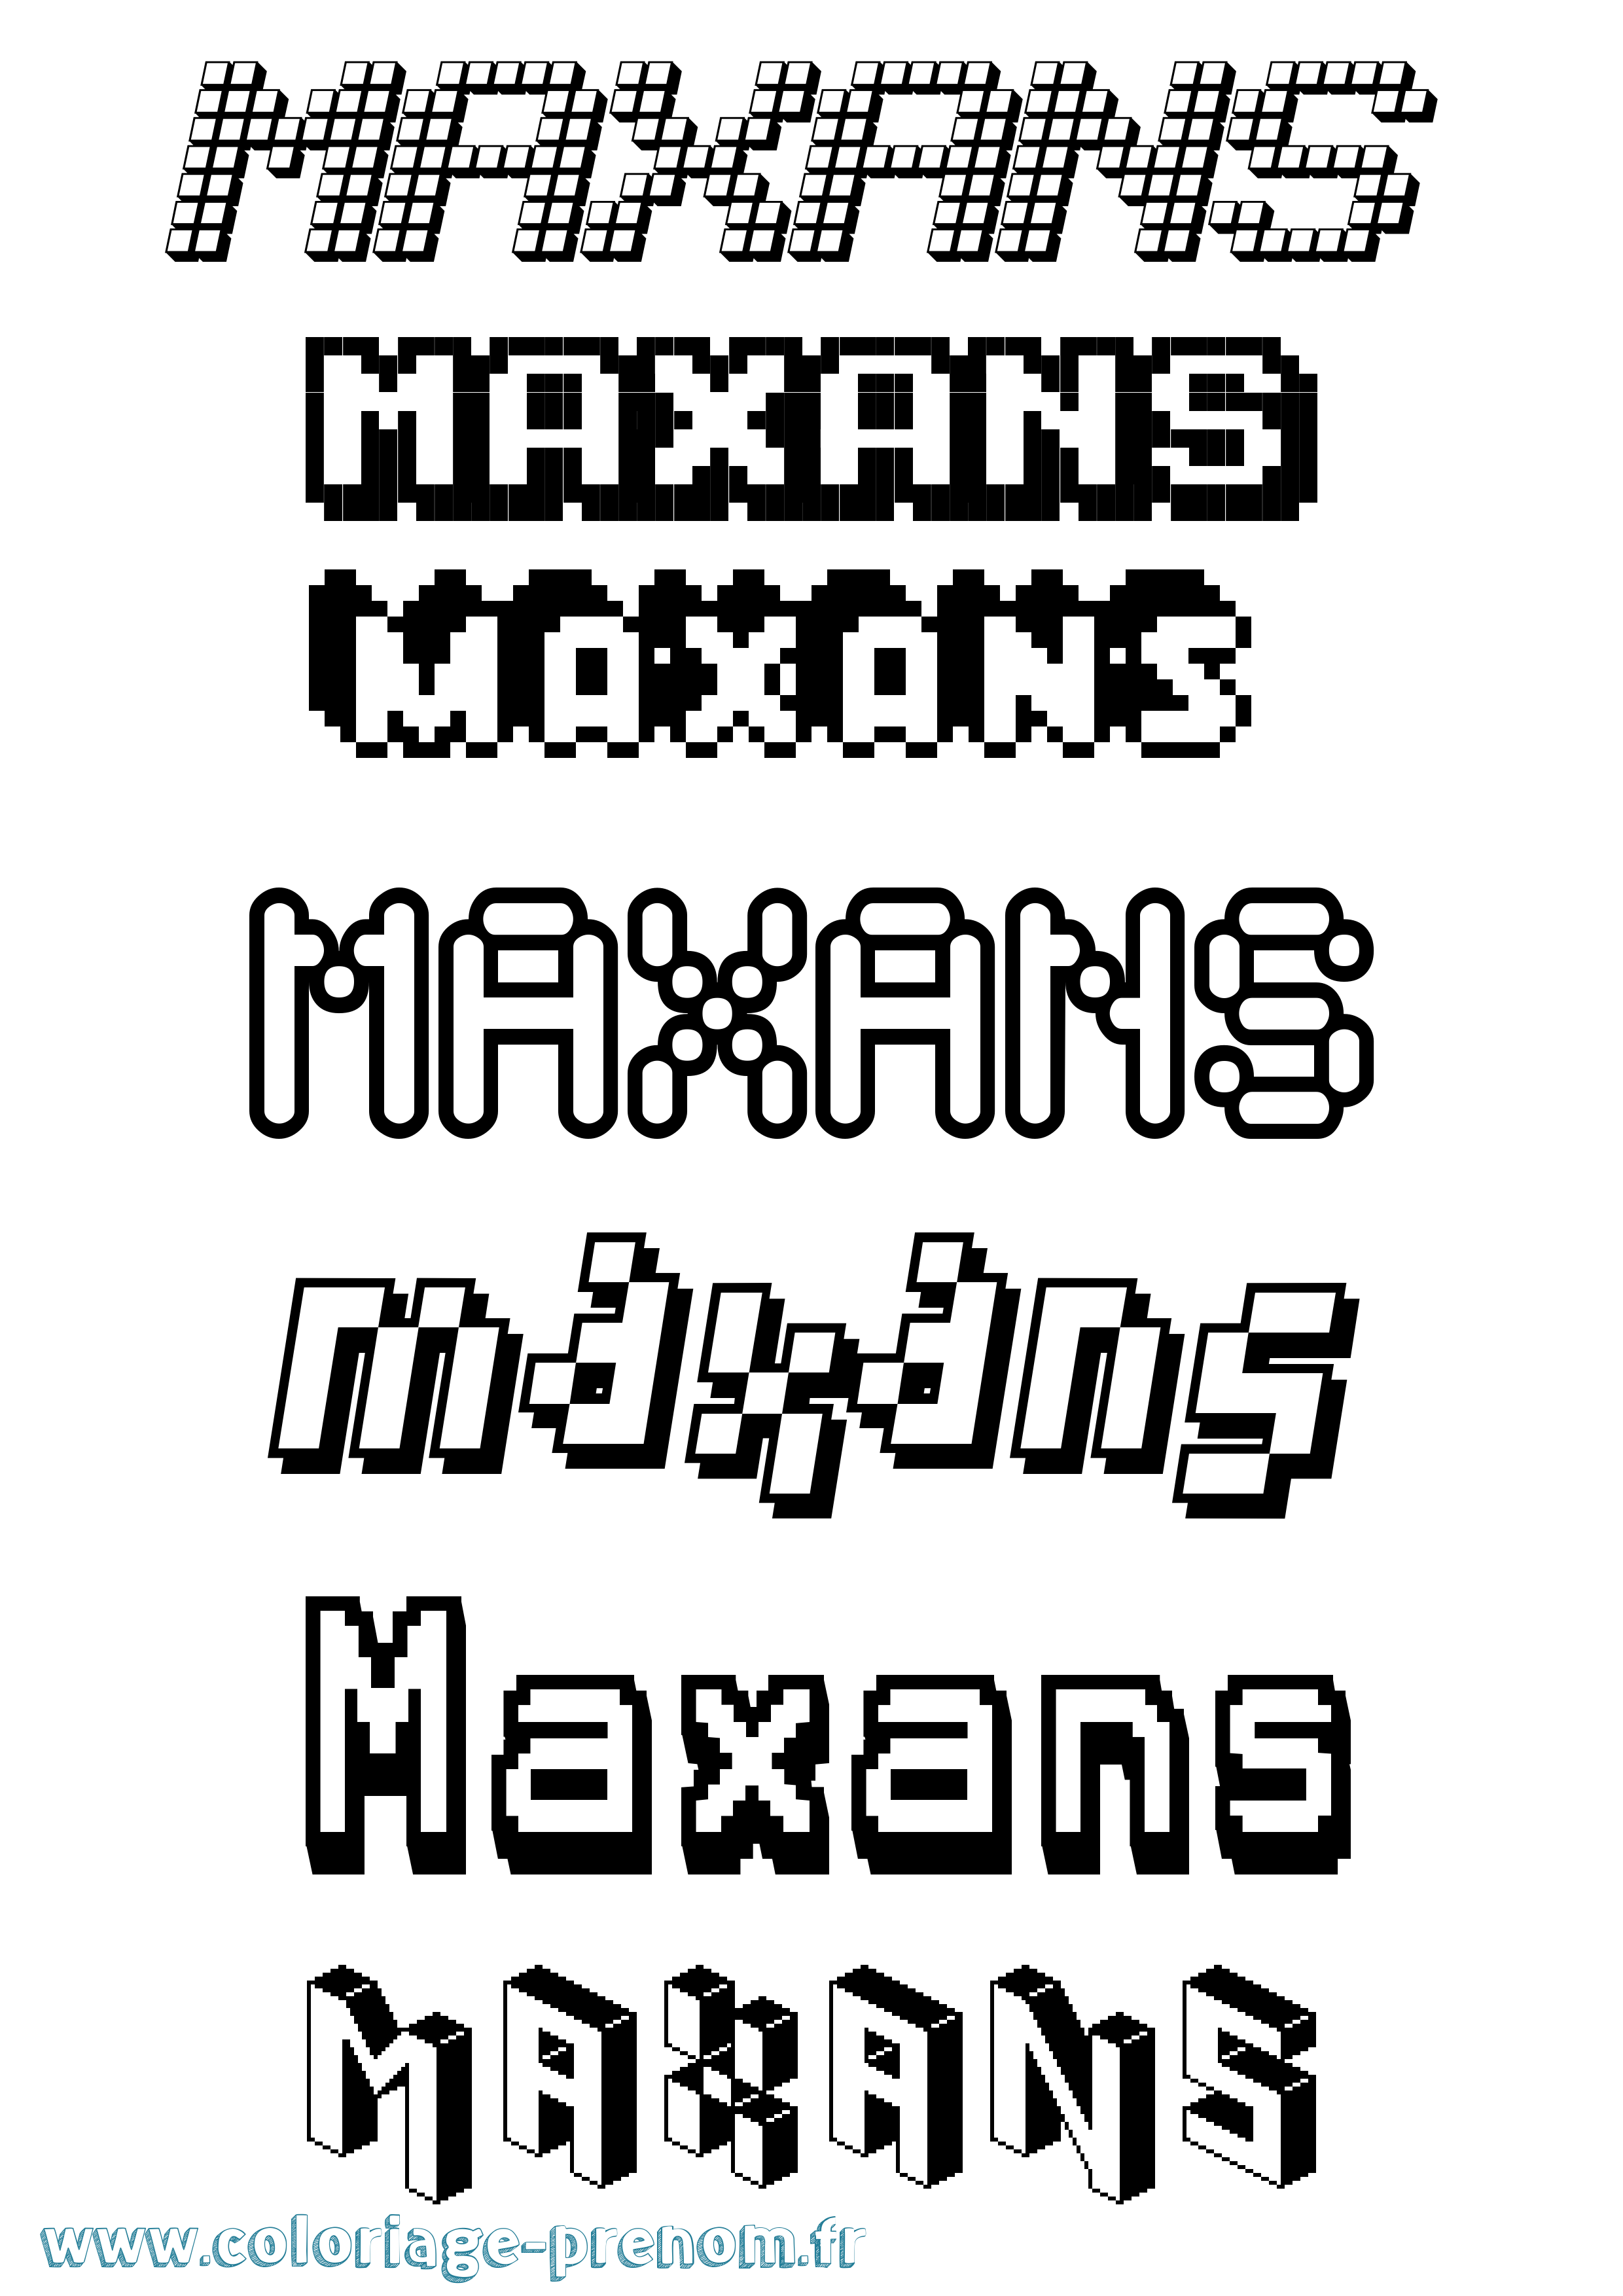 Coloriage prénom Maxans Pixel